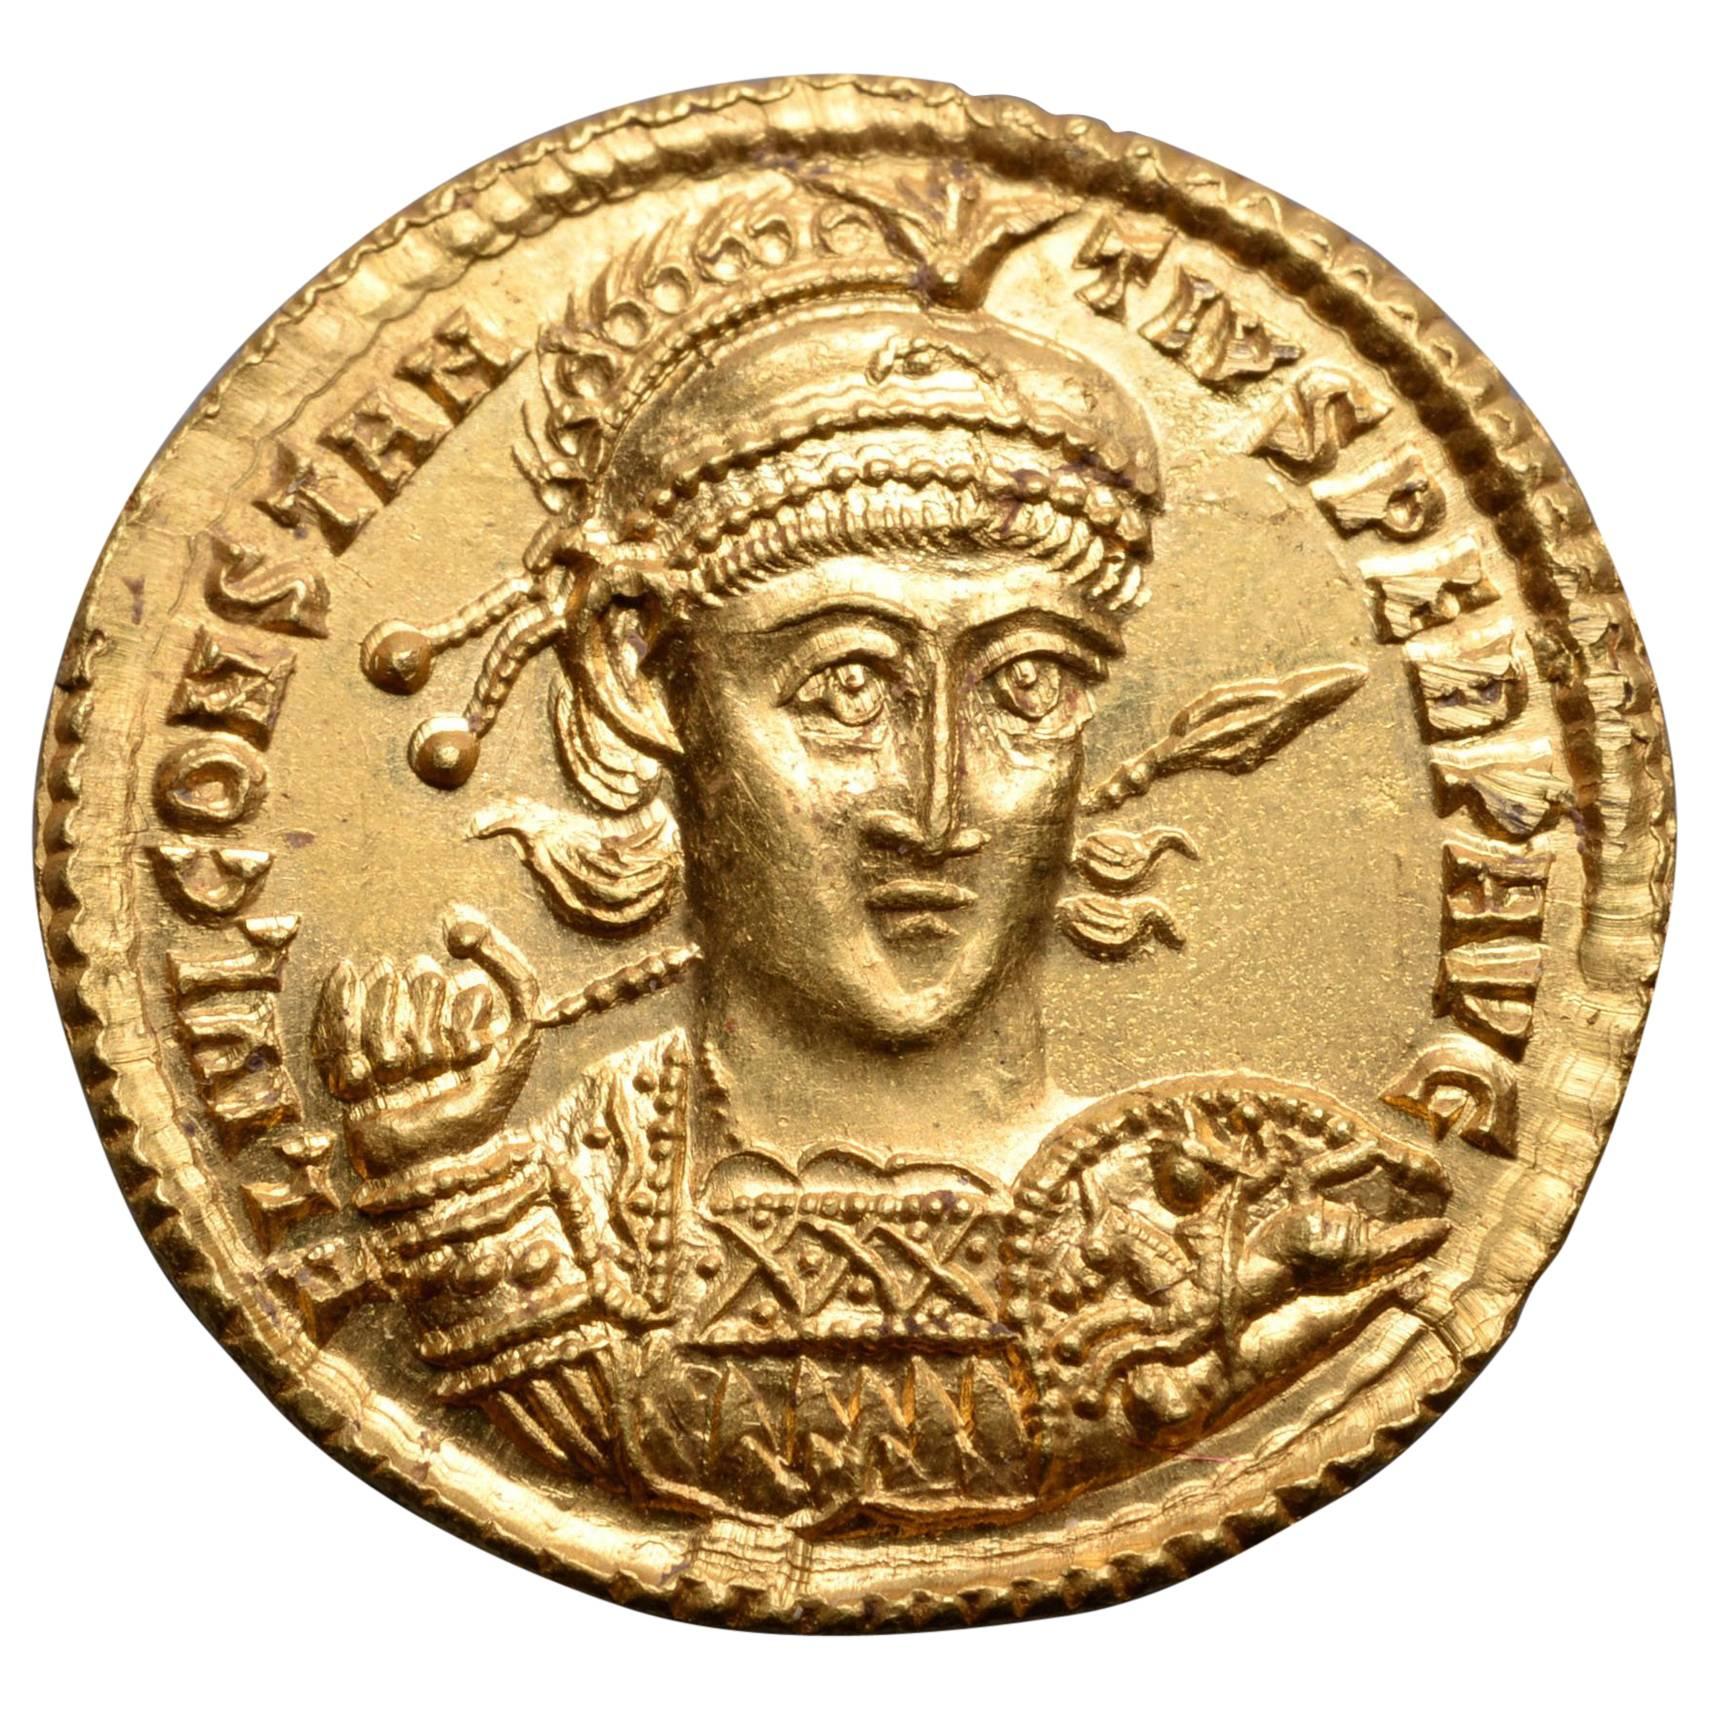 Superb Ancient Roman Gold Solidus Coin of Emperor Constantius II, 355 AD